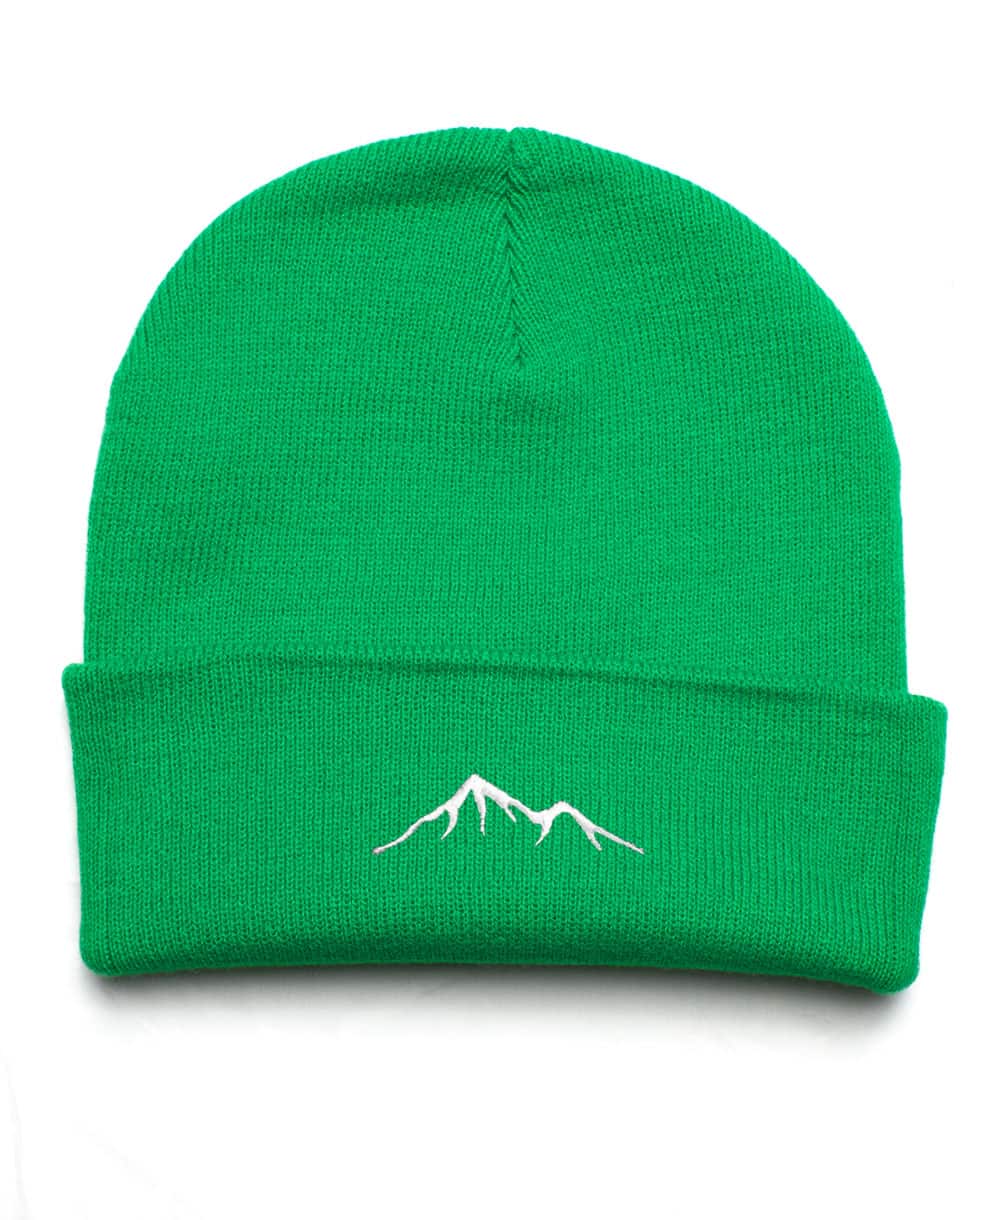 Le Bandeau des Montagnes Voyage en couleurs - Le bonnet des montagnes